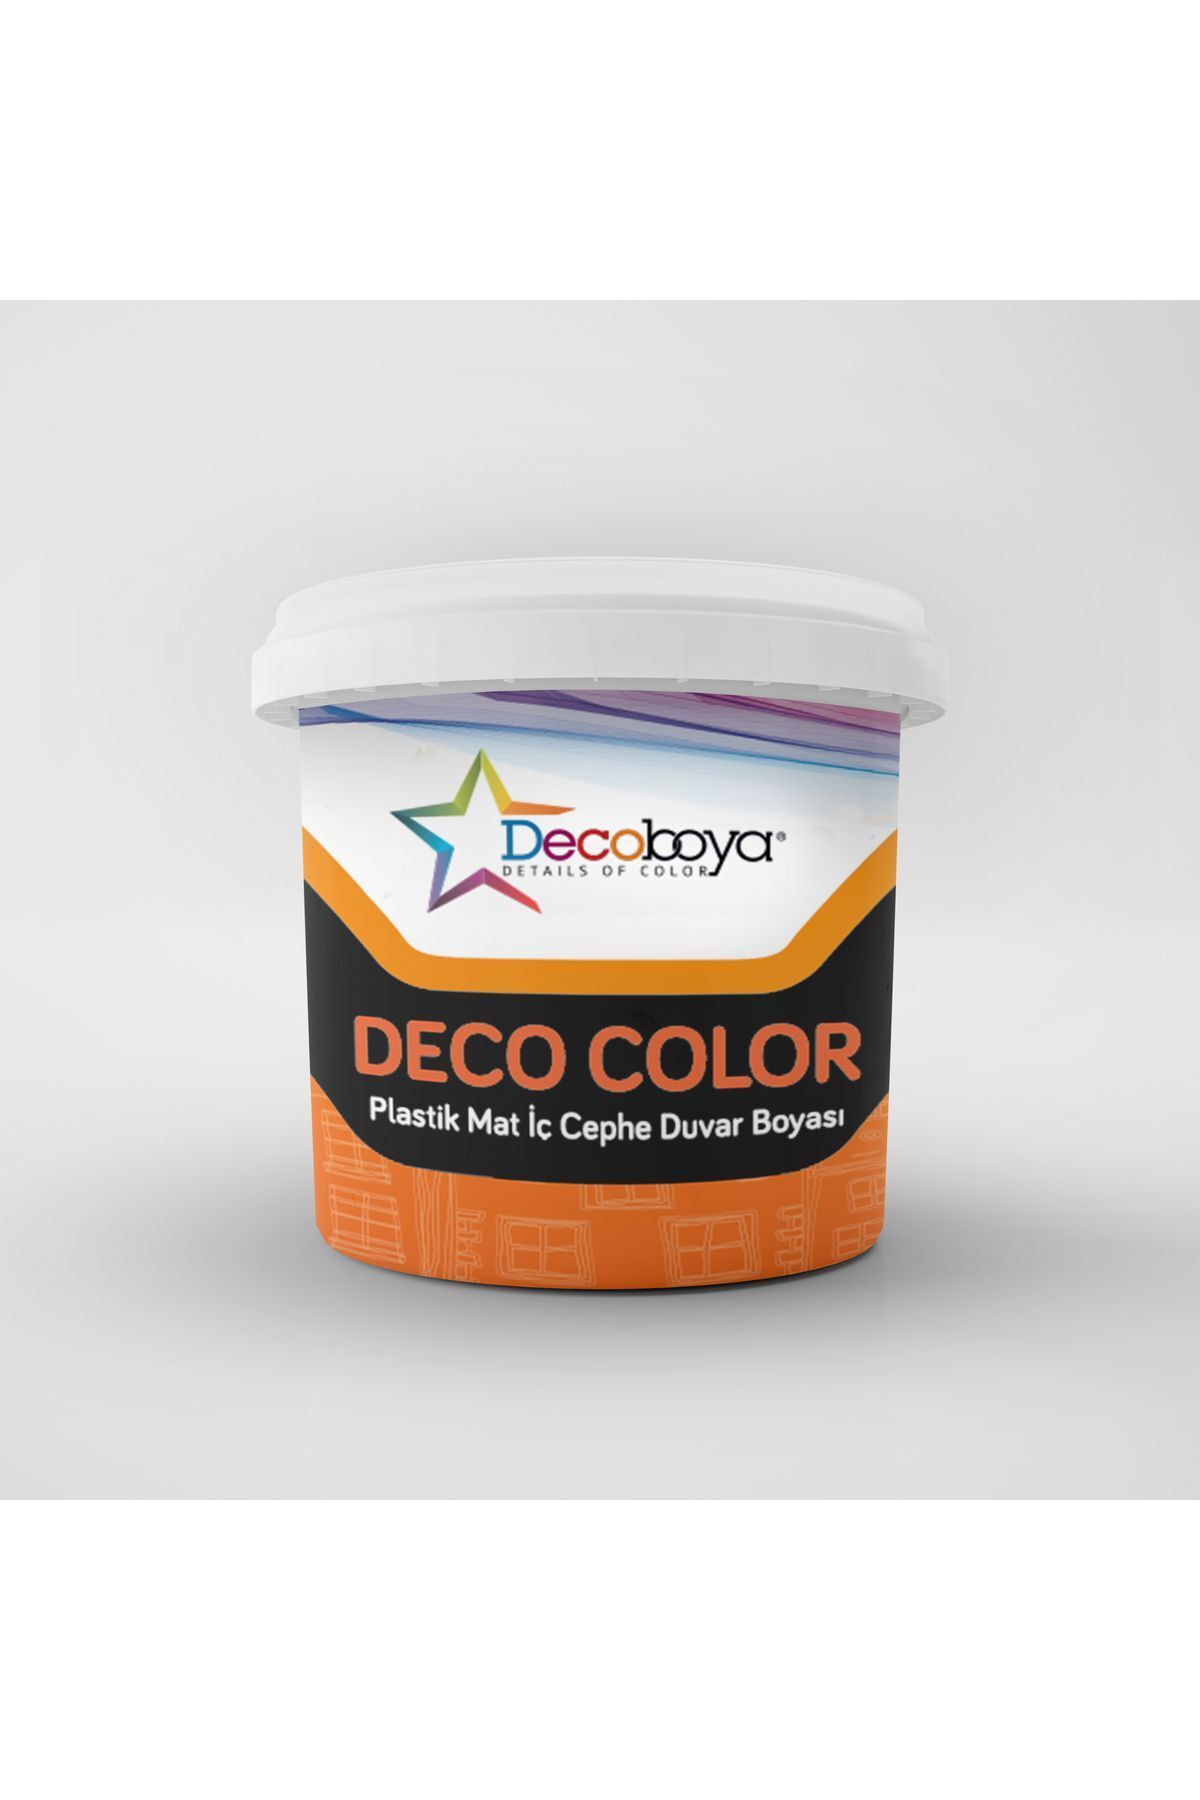 DecoBoya Deco Color Plastik Mat İç Cephe Duvar Boyası 3 Kg Tüm Renkler